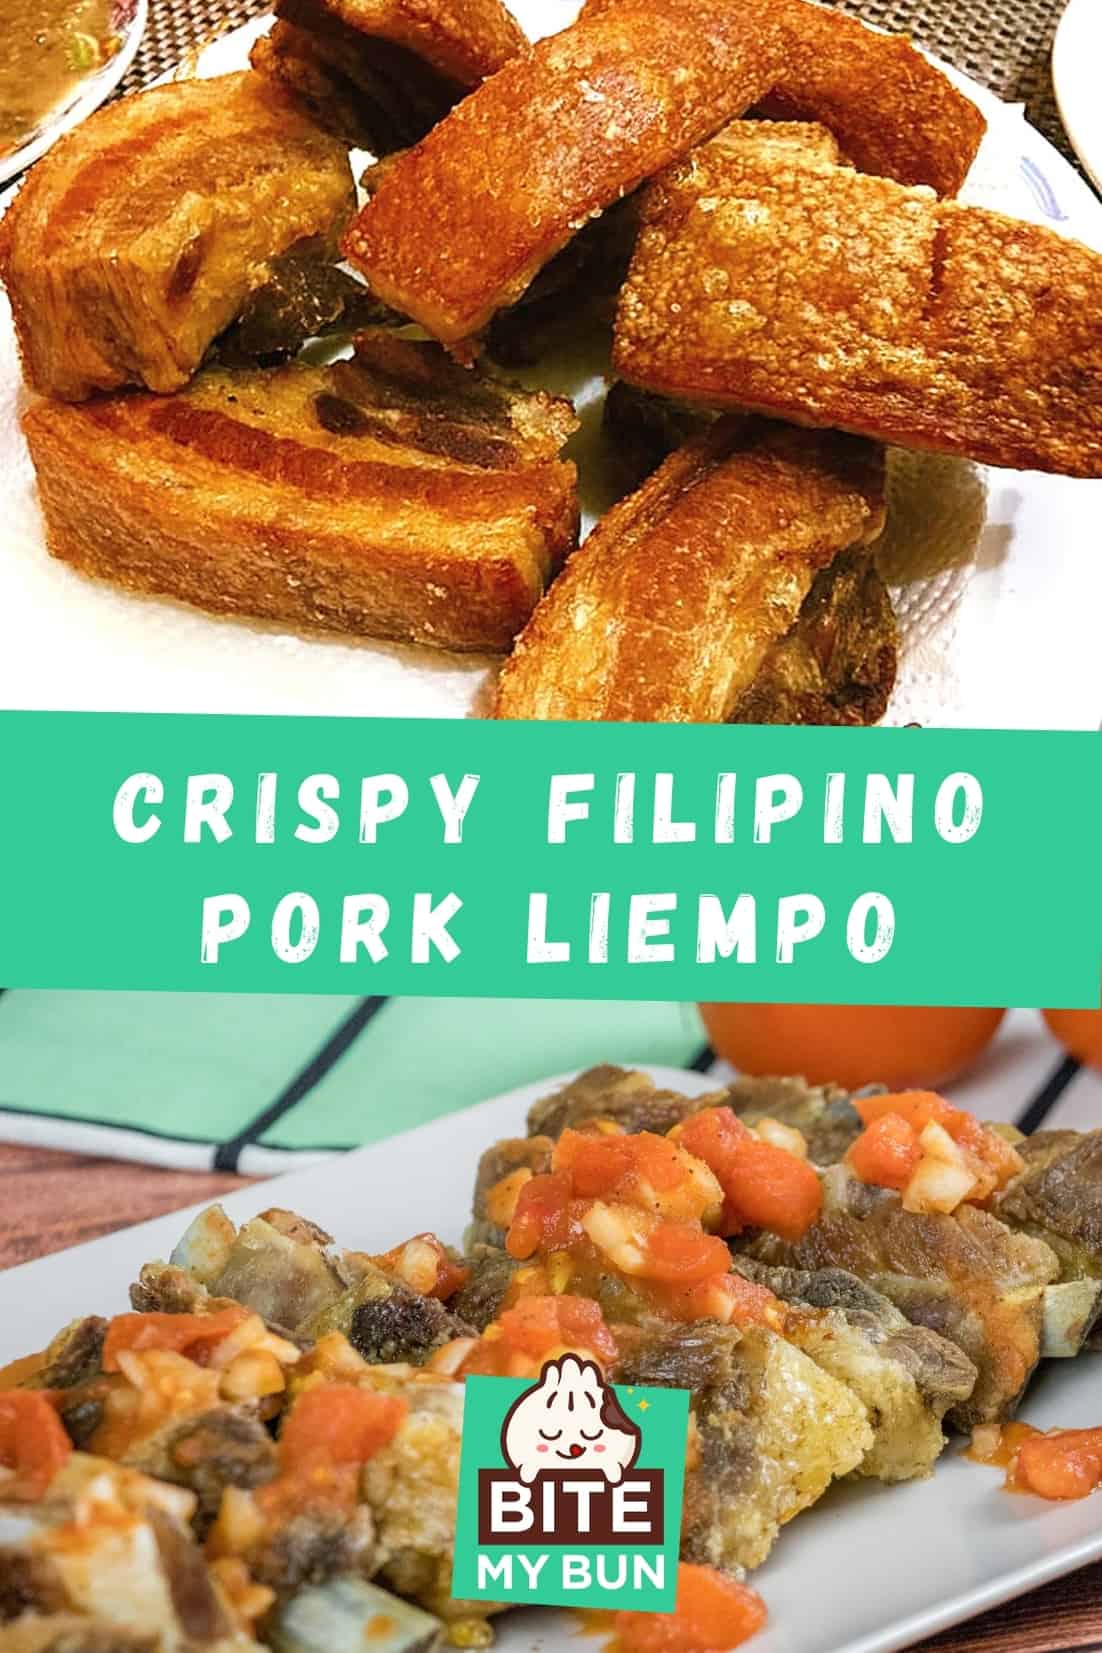 Hur man äter krispig filippinsk fläsk liempo bagnet